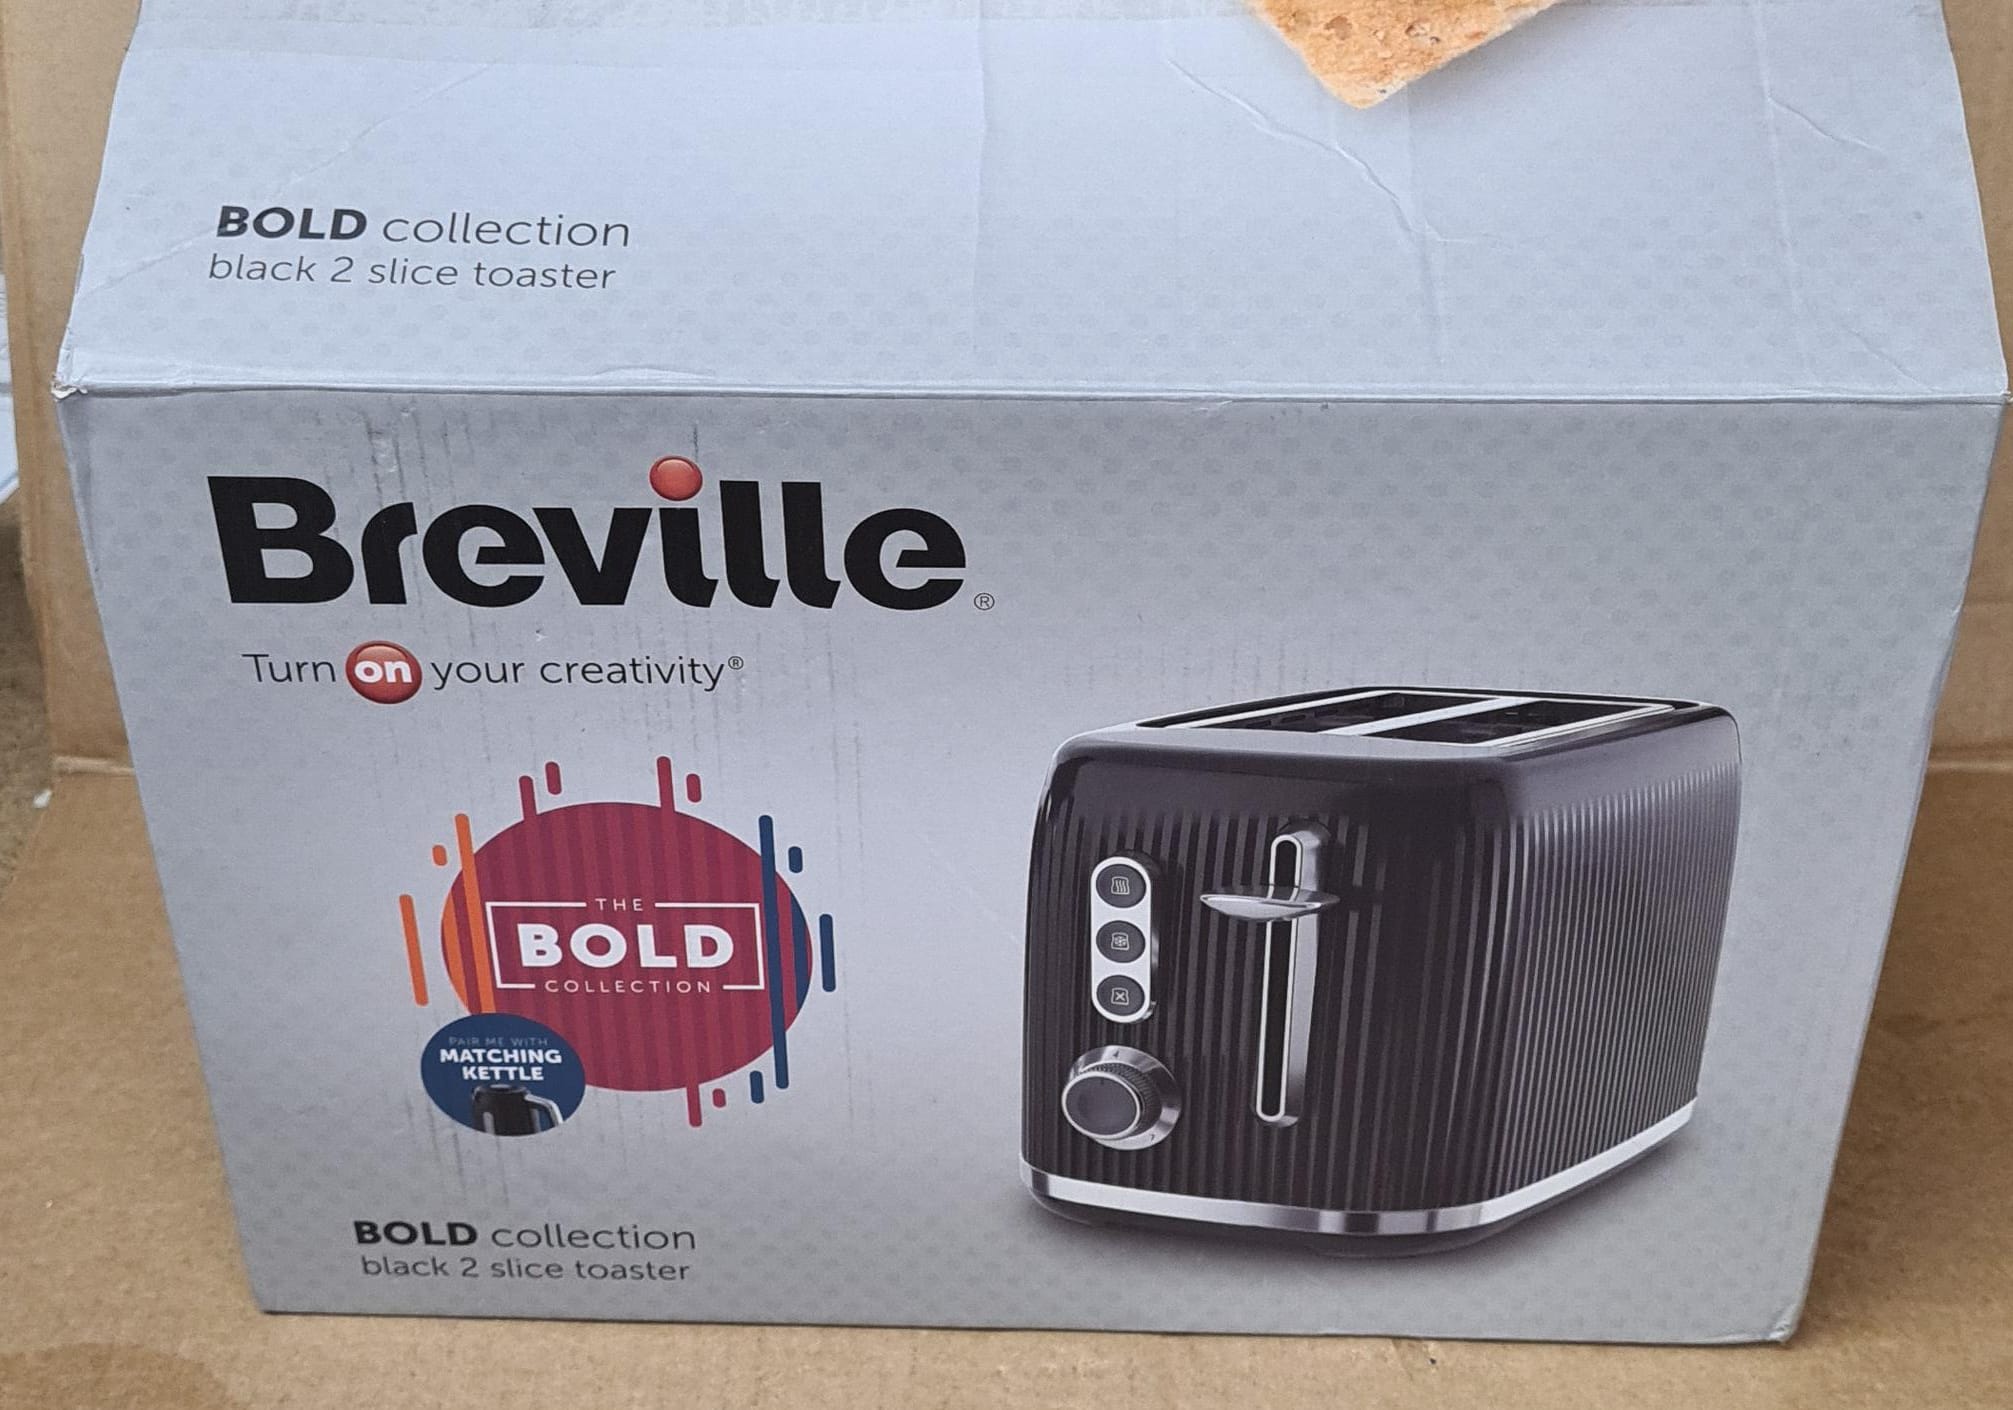 Breville Bold Collection 2 Slice Toaster Black - 3508u